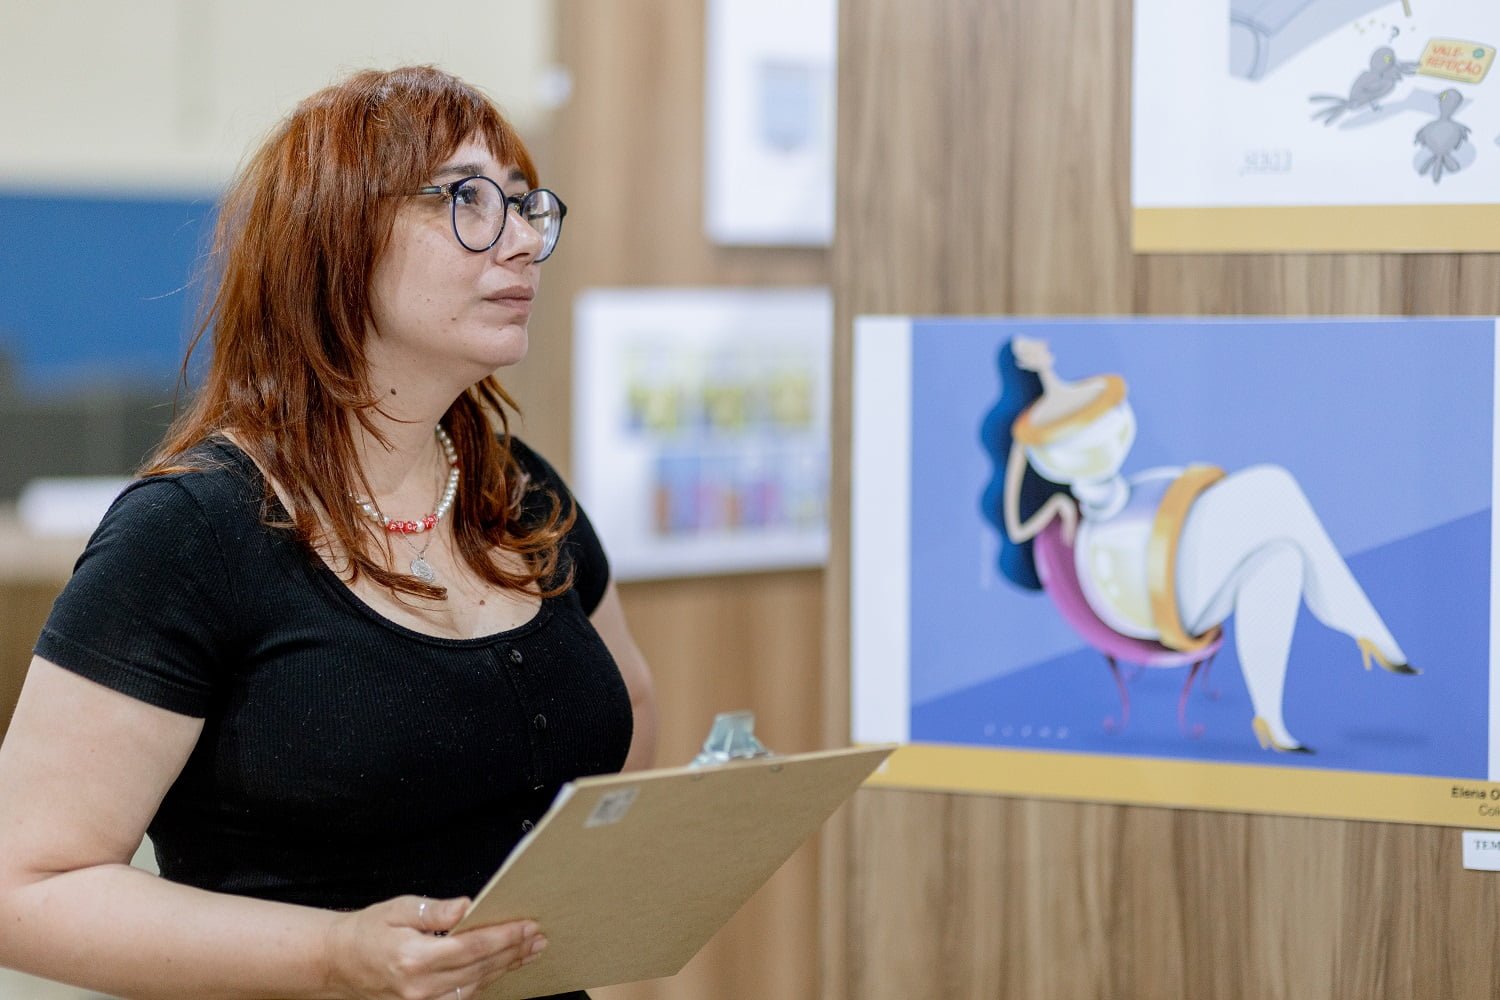 Fabiane Langona, quadrinista, cartunista e artista visual brasileira vai ensinar sua técnica de desenhar tirinhas